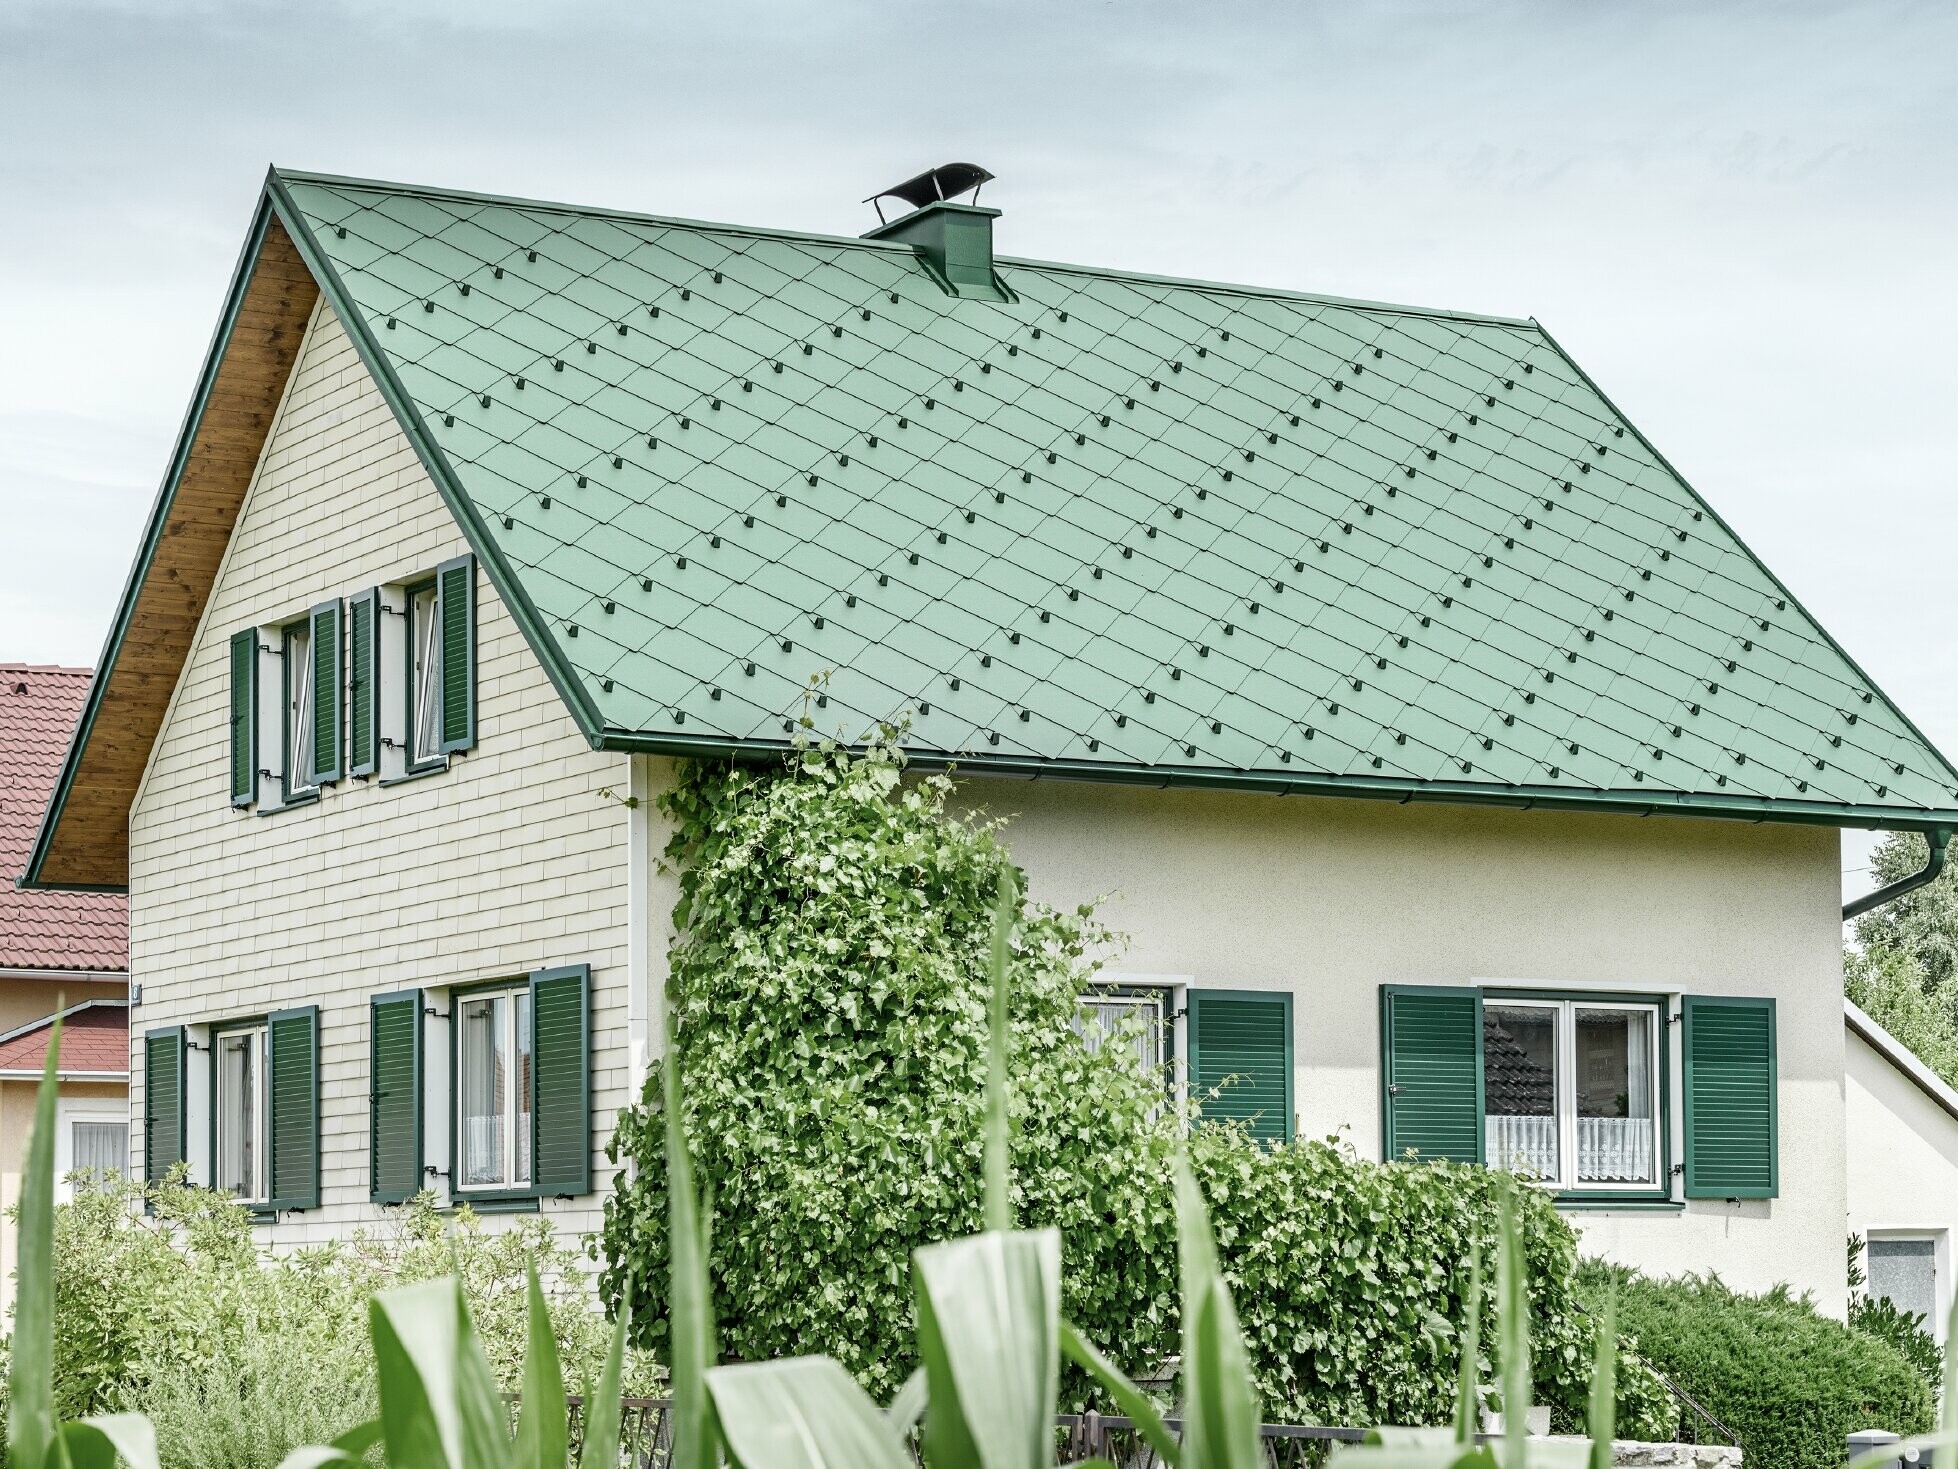 Klasyczny dom jednorodzinny z dachem dwuspadowym, pokryty aluminium w kolorze zielenimchu z zielonymi okiennicami